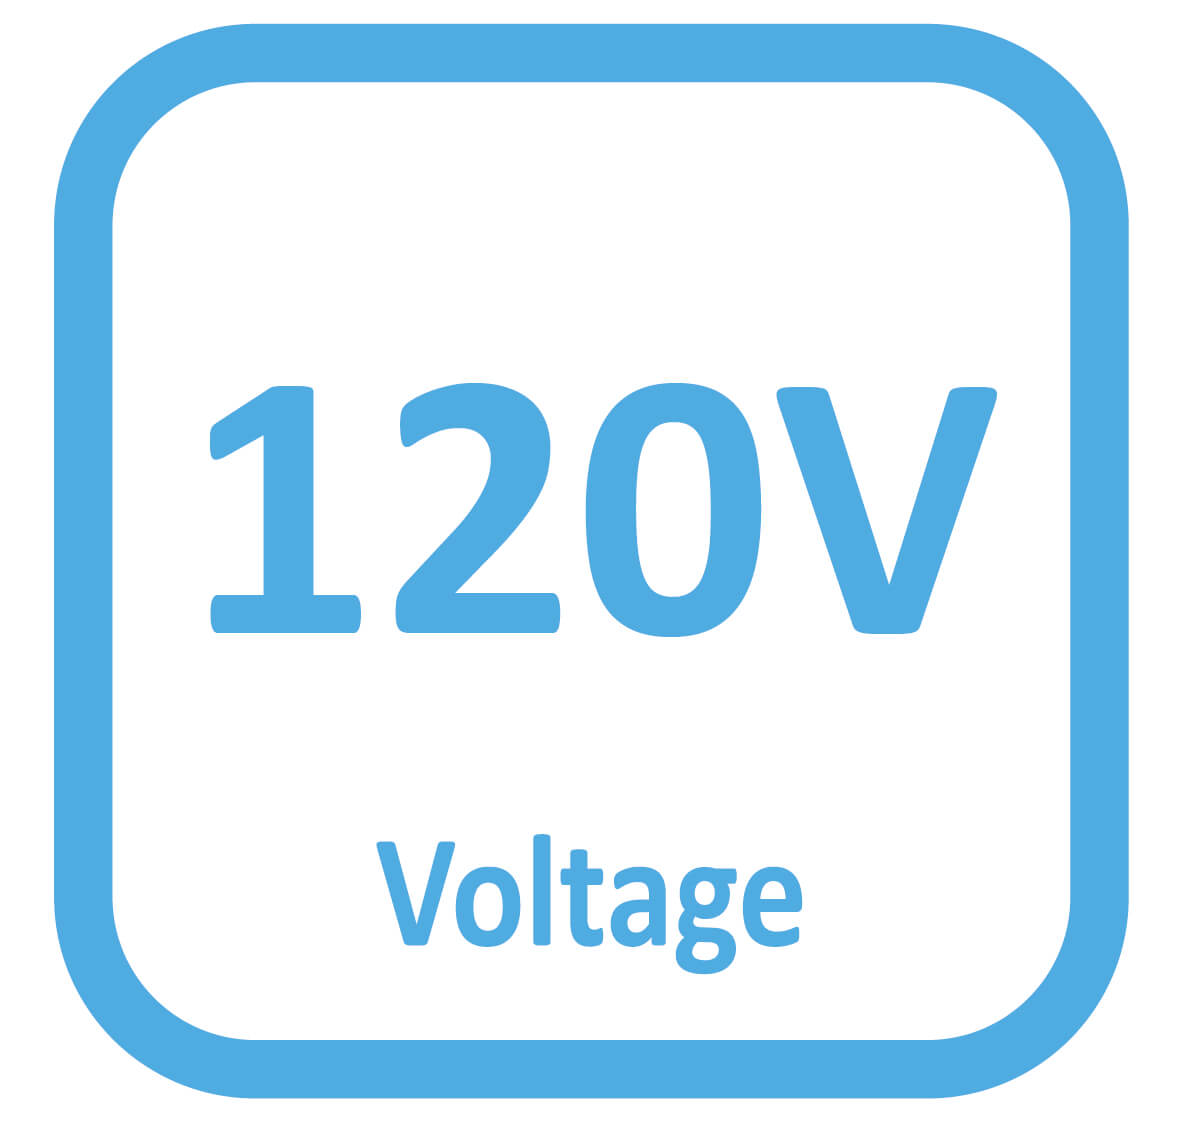 120 Voltage